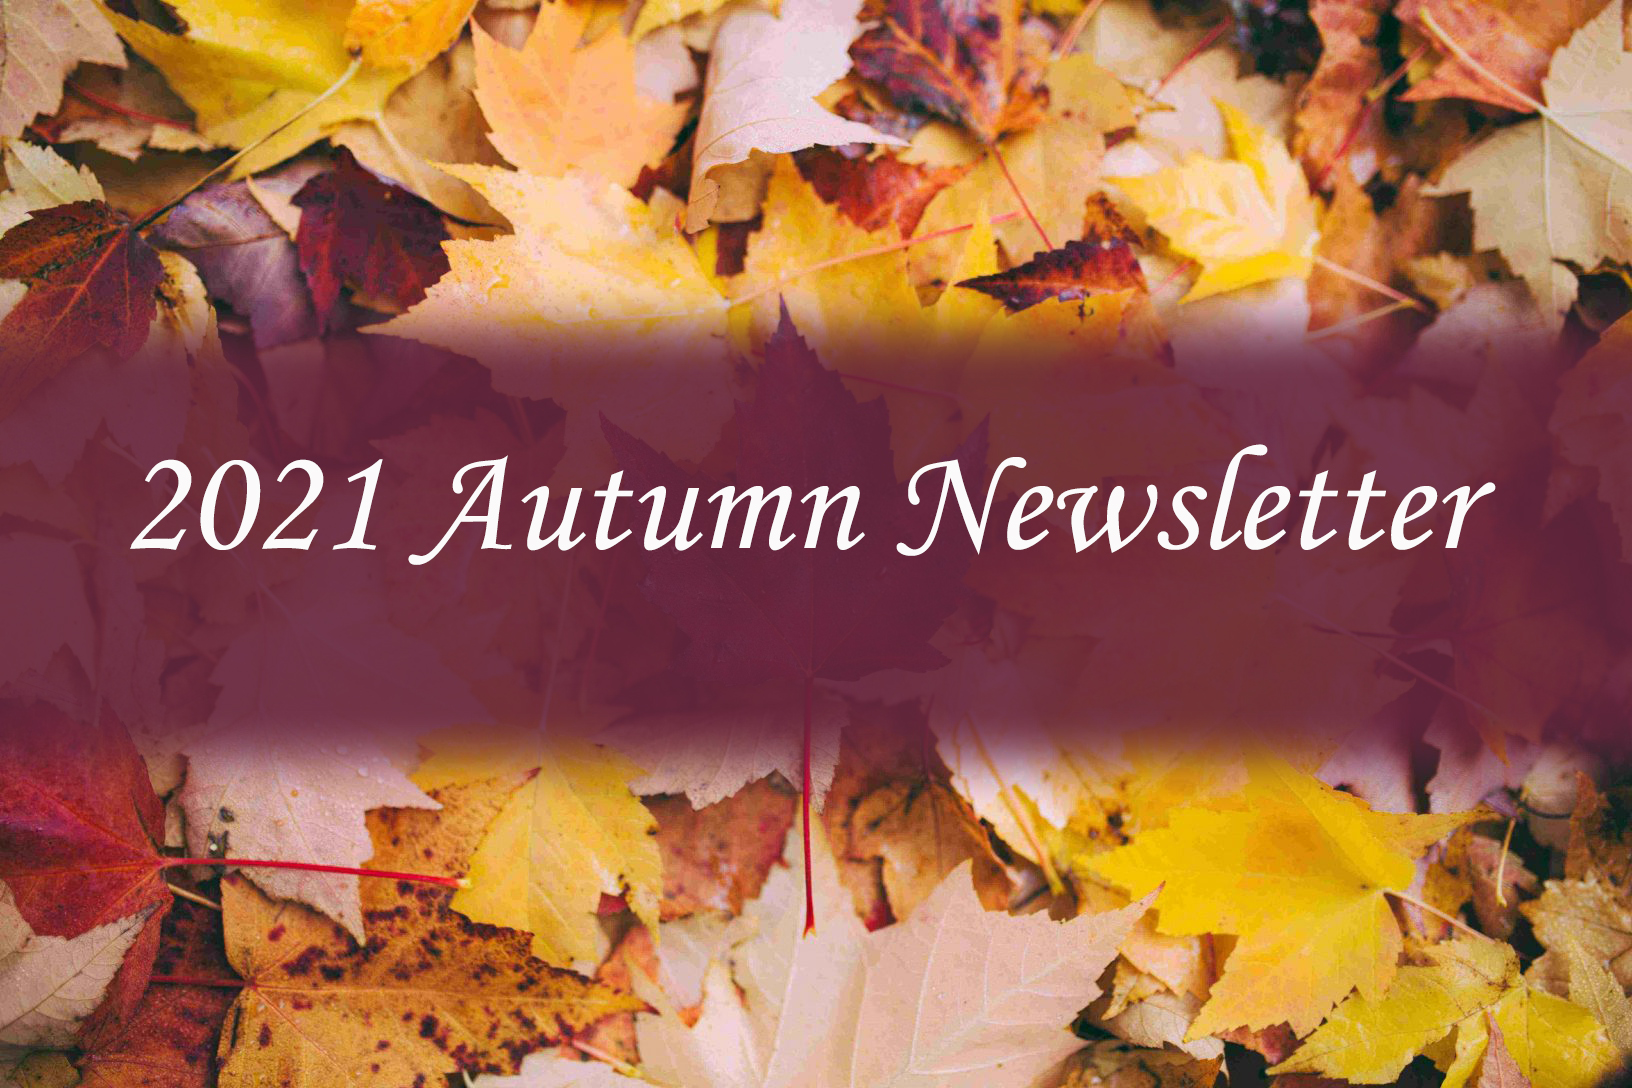 Autumn Newsletter Image 2021